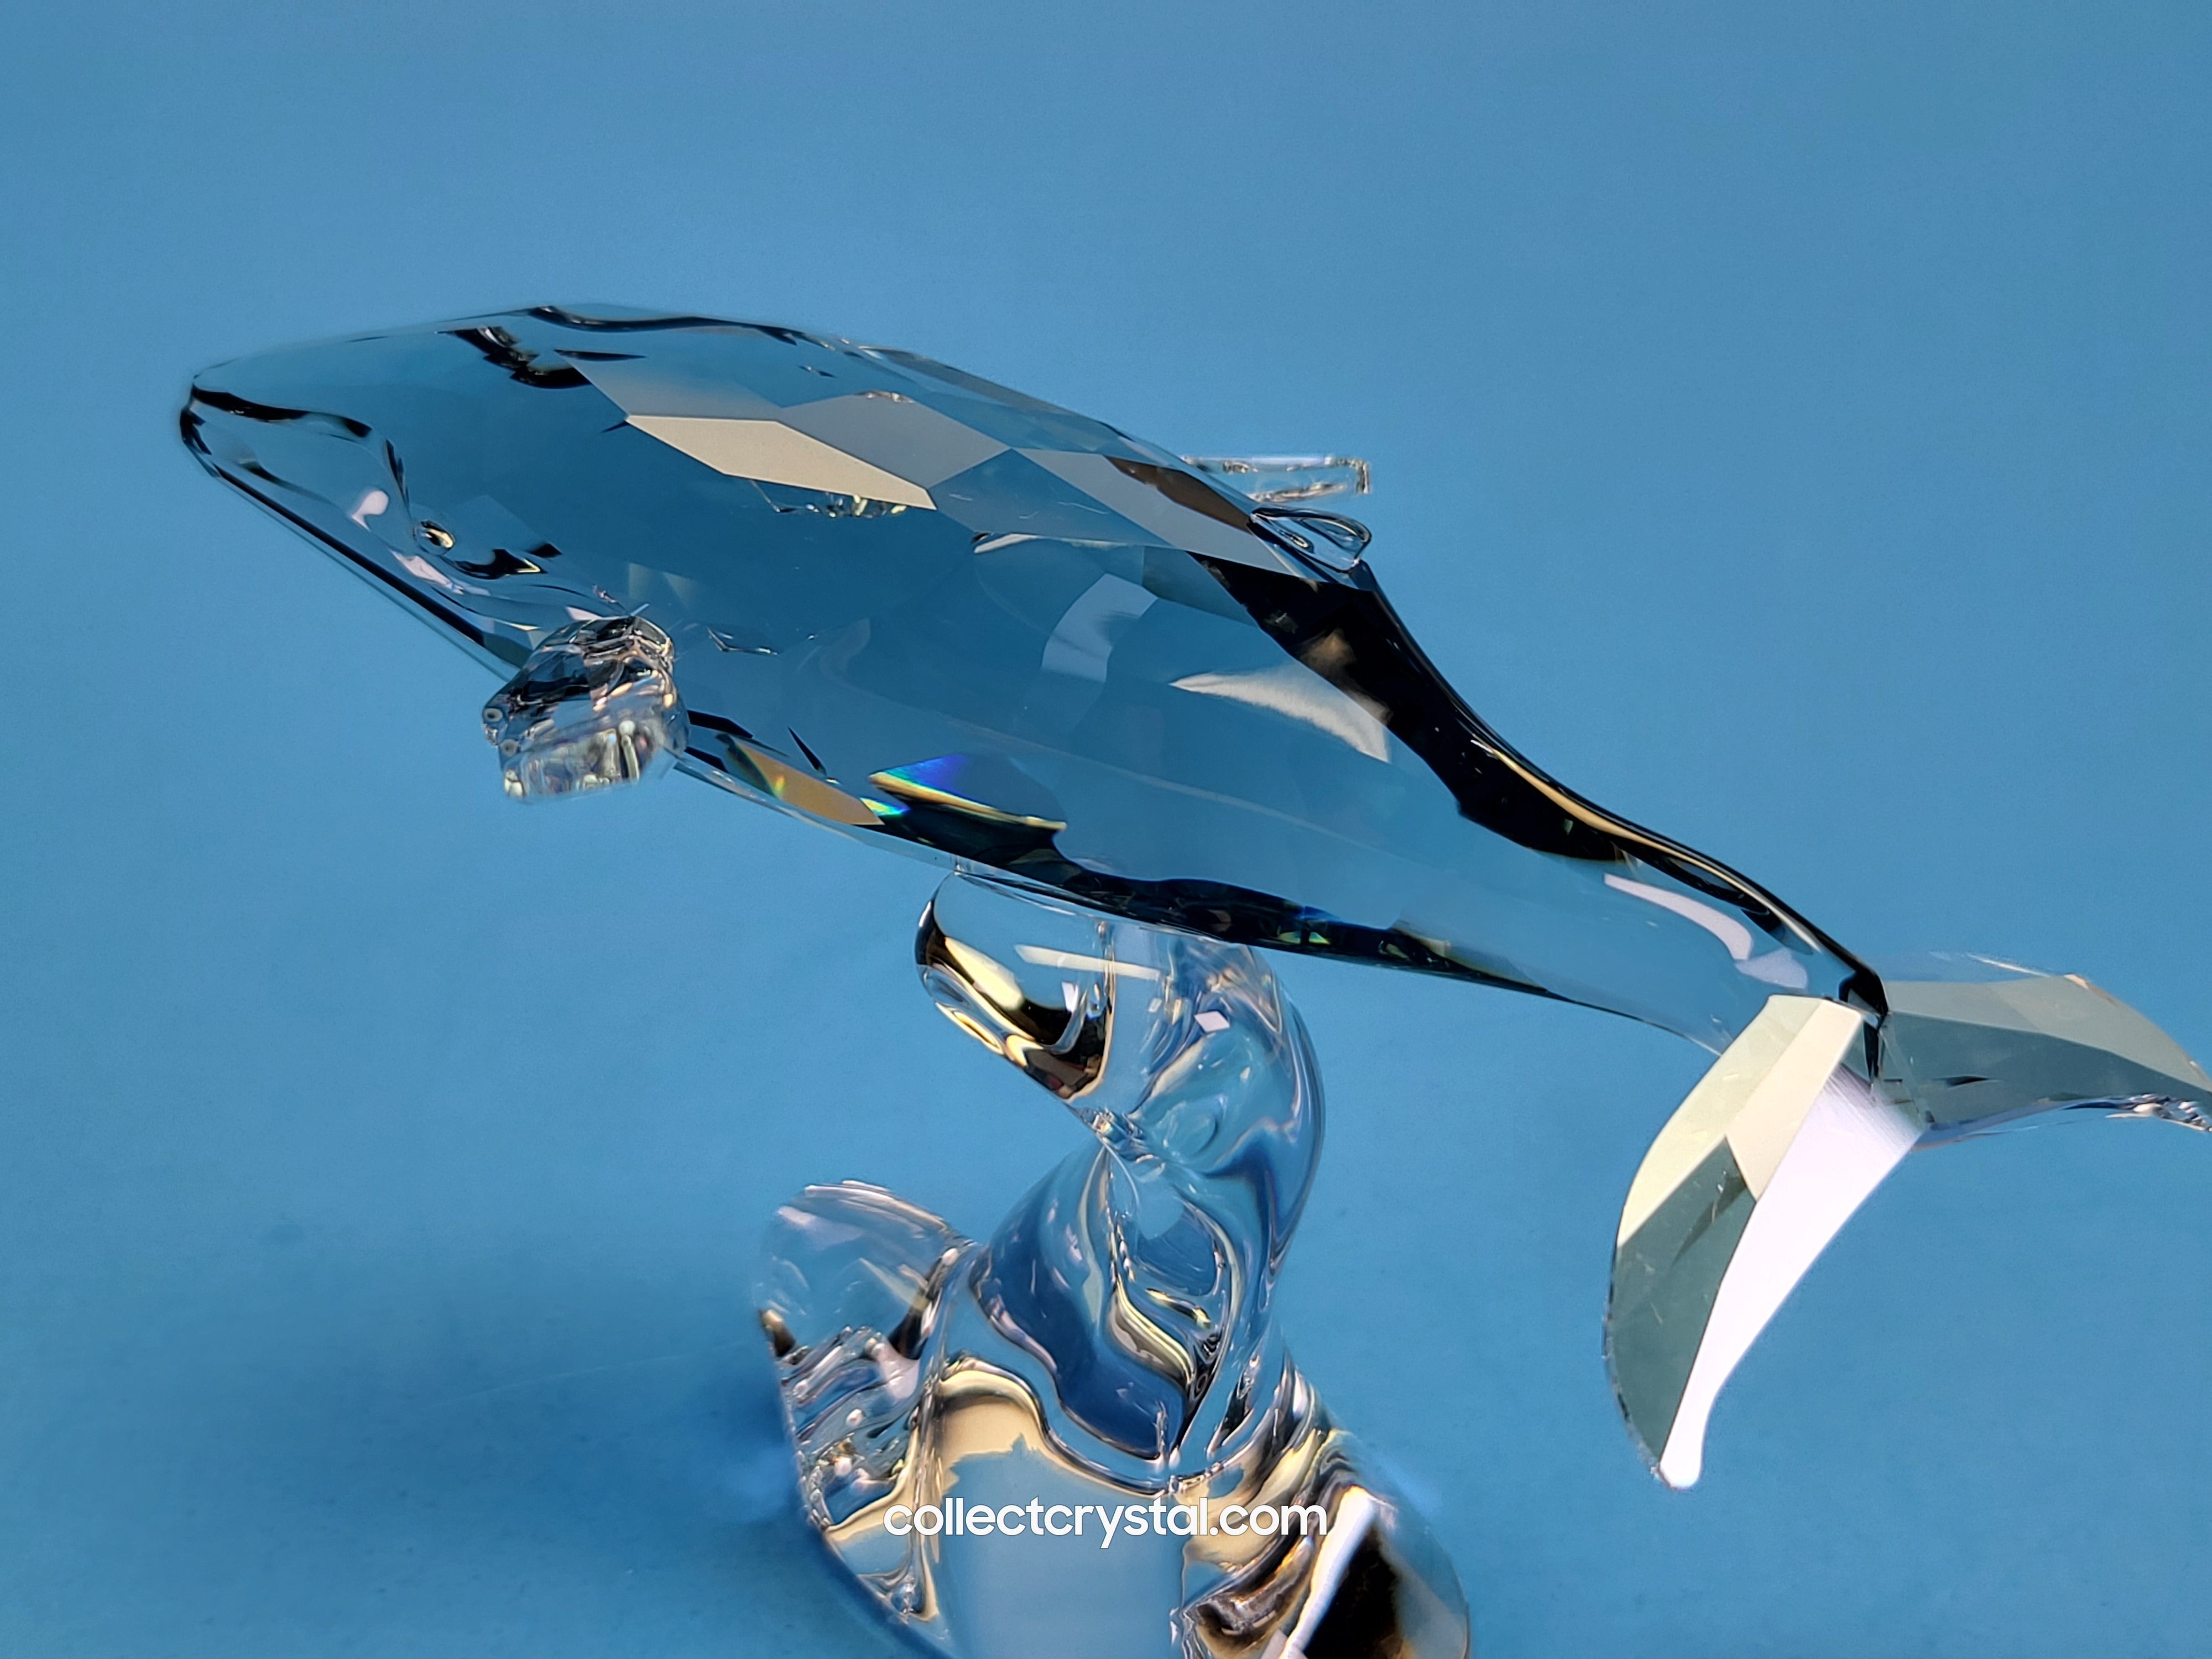 SWAROVSKI Swarovski Crystal Figurine #1096741, 2012 SCS Annual